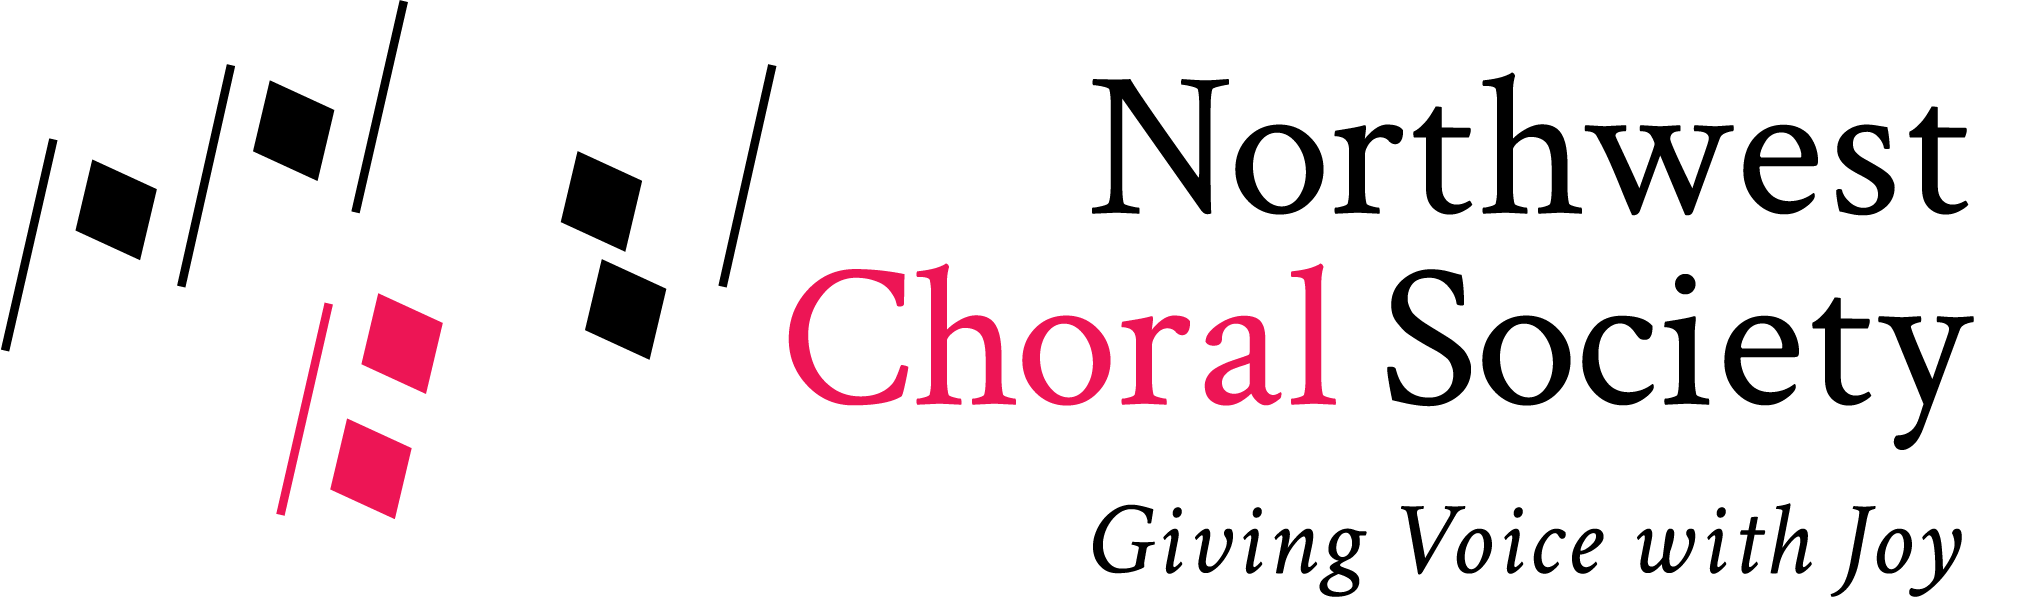 Northwest Choral Society